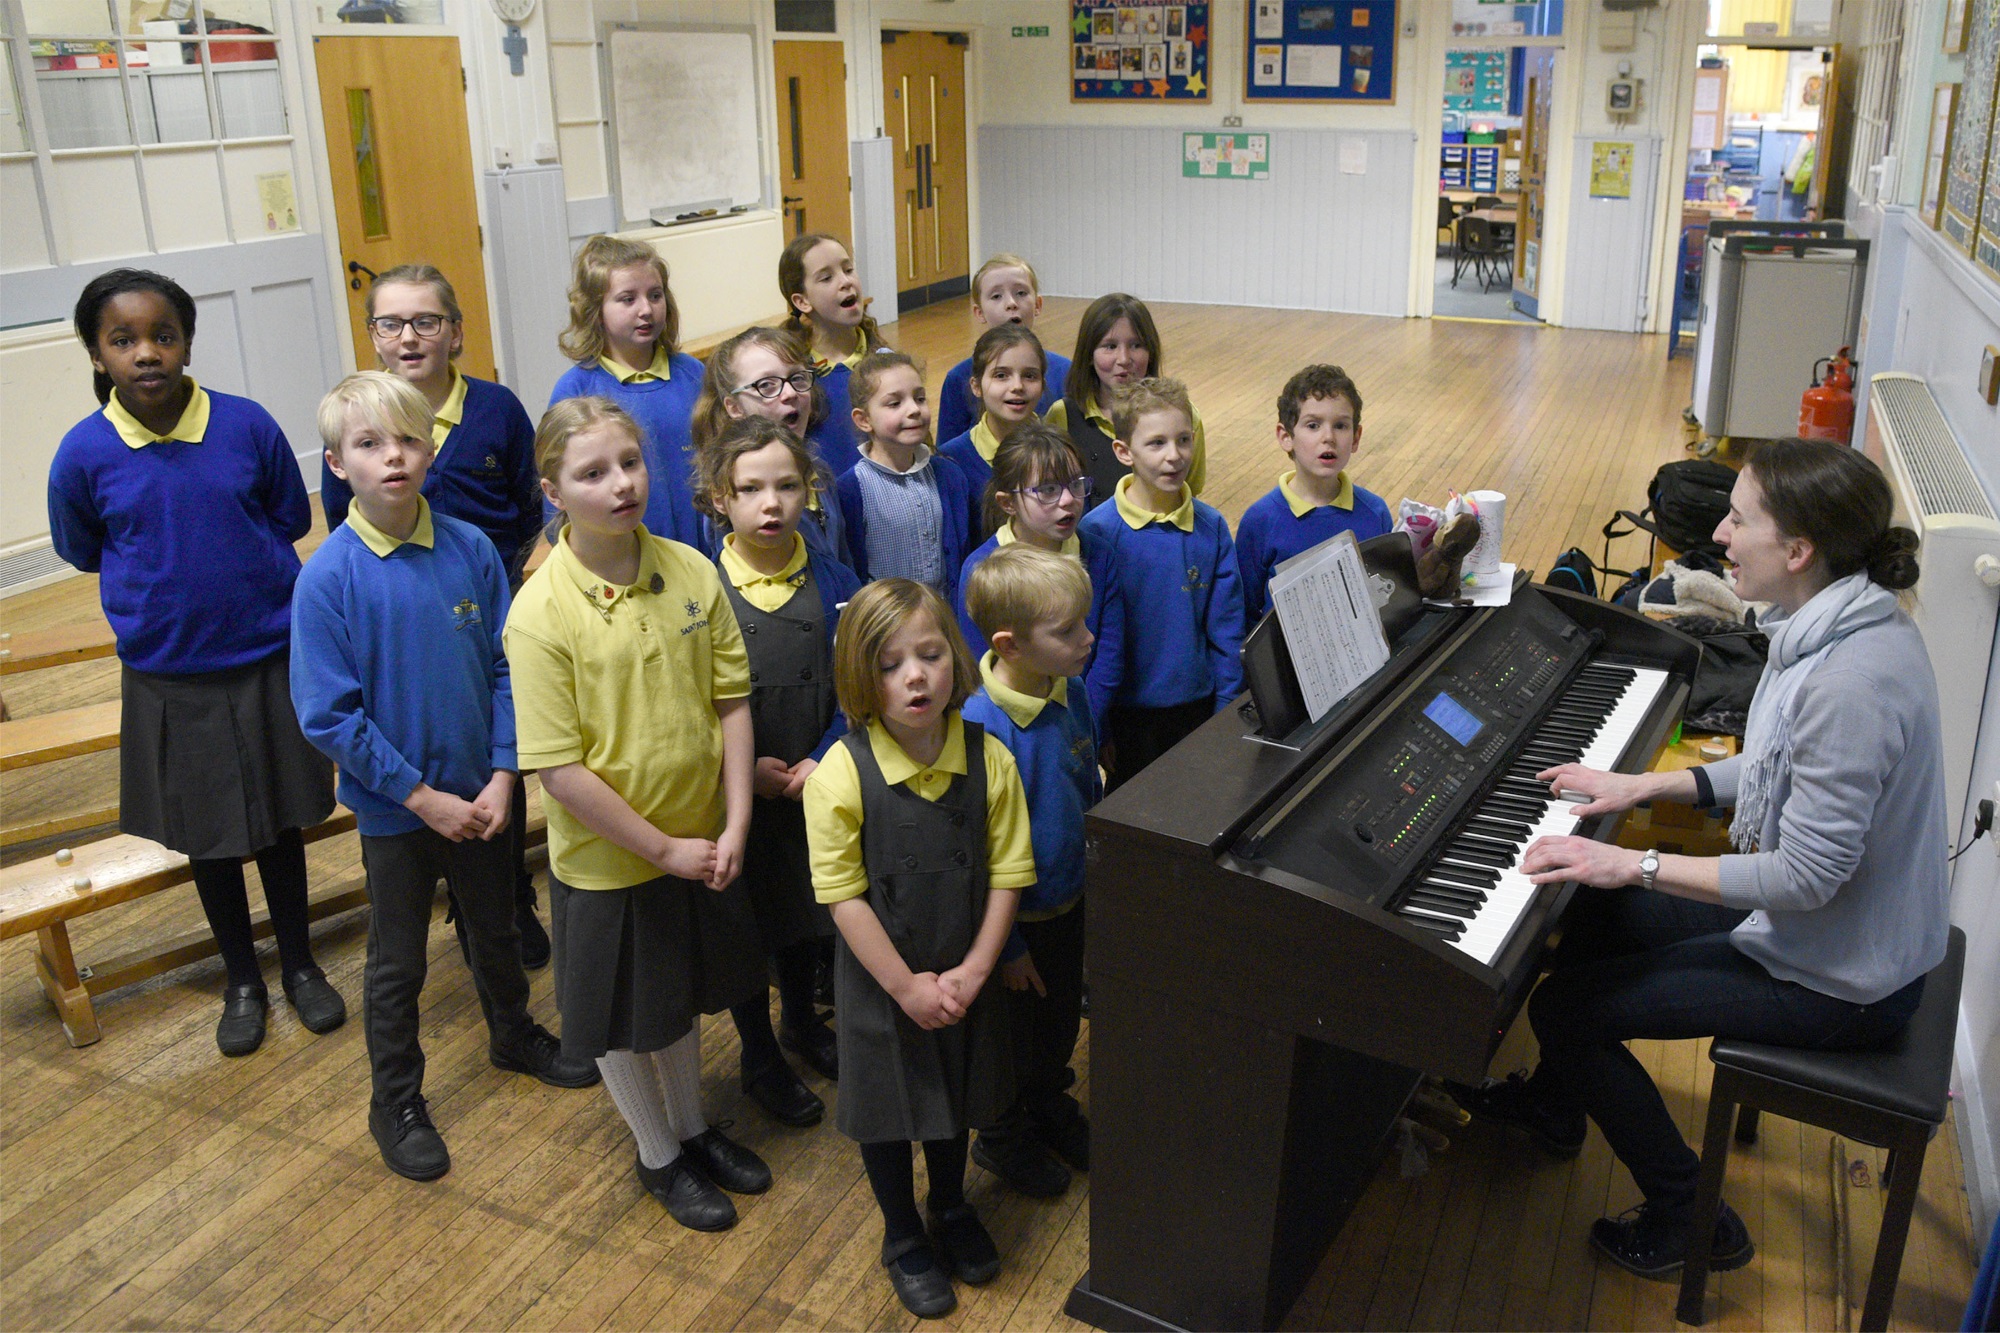 School Choir